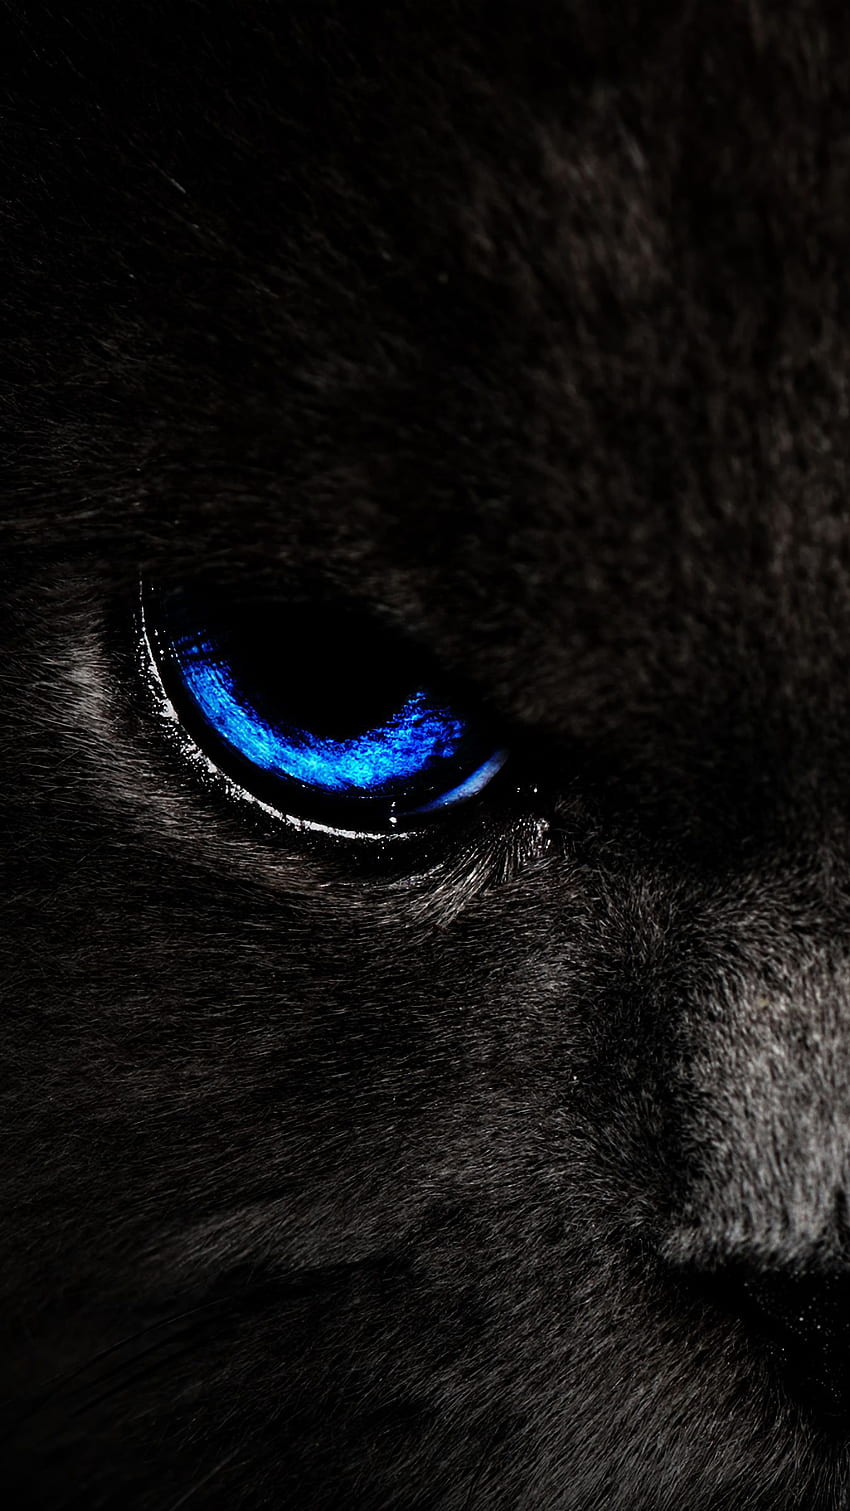 Nhìn vào đôi mắt của một chú mèo mắt xanh sẽ khiến bạn cảm thấy trầm trồ và mê mẩn. Chúng mang lại sự bí ẩn và vẻ đẹp đặc biệt cho những chú mèo. Hãy xem bức ảnh của những chú mèo mắt xanh này và tận hưởng sự đẹp đẽ của chúng.